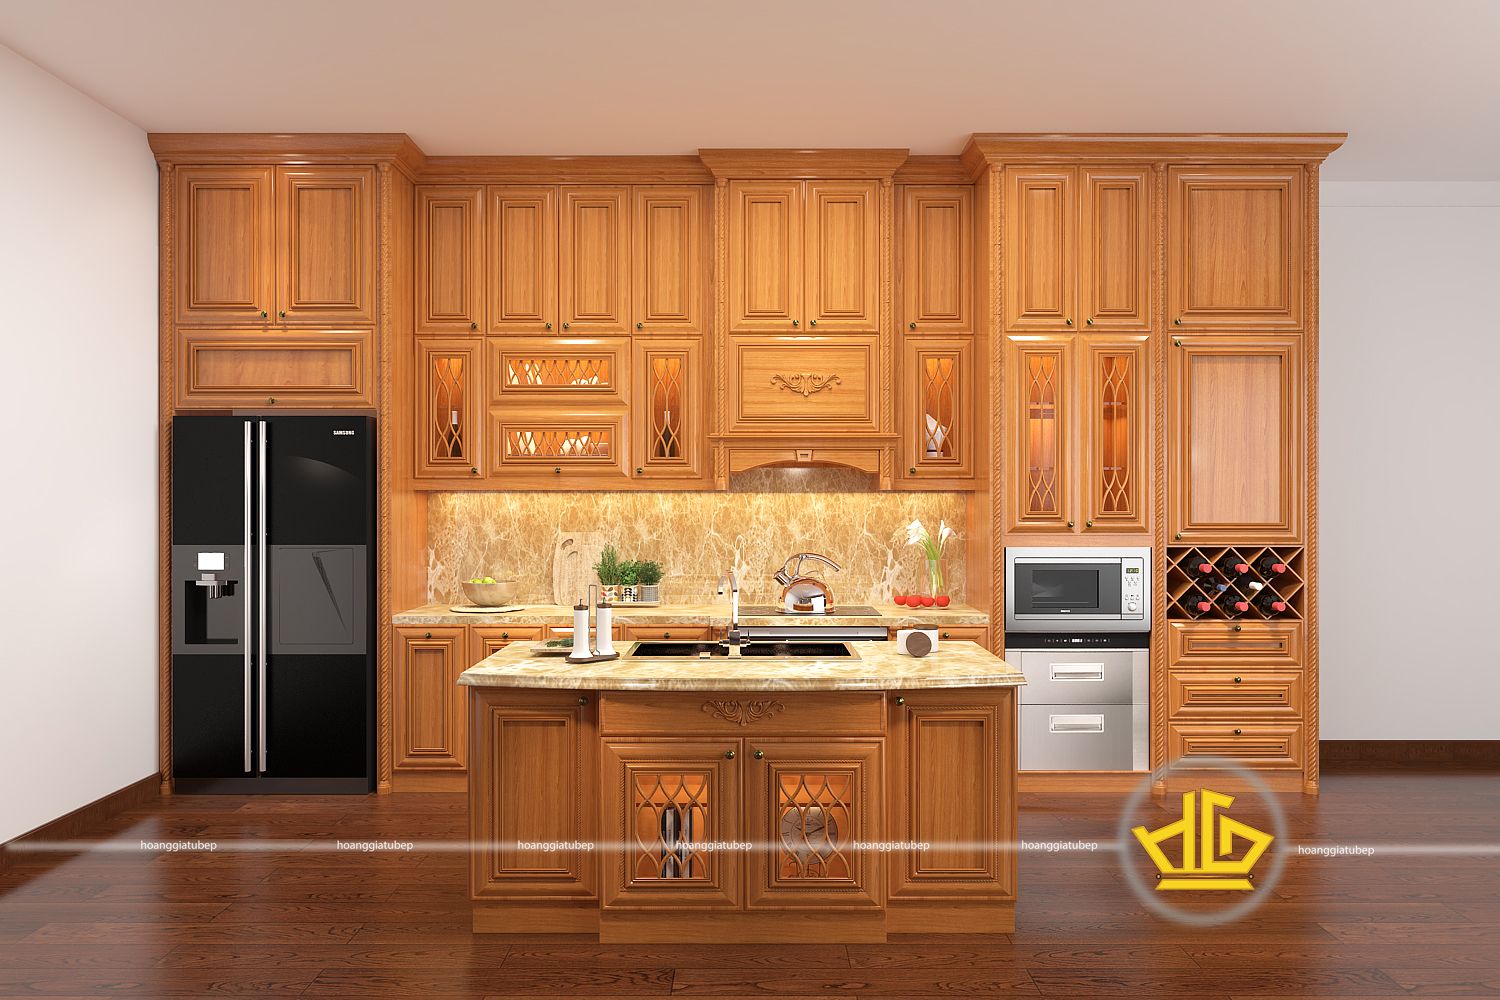 Chất liệu tủ bếp gỗ gõ đỏ trong nội thất bếp gia đình - Tủ bếp đẹp